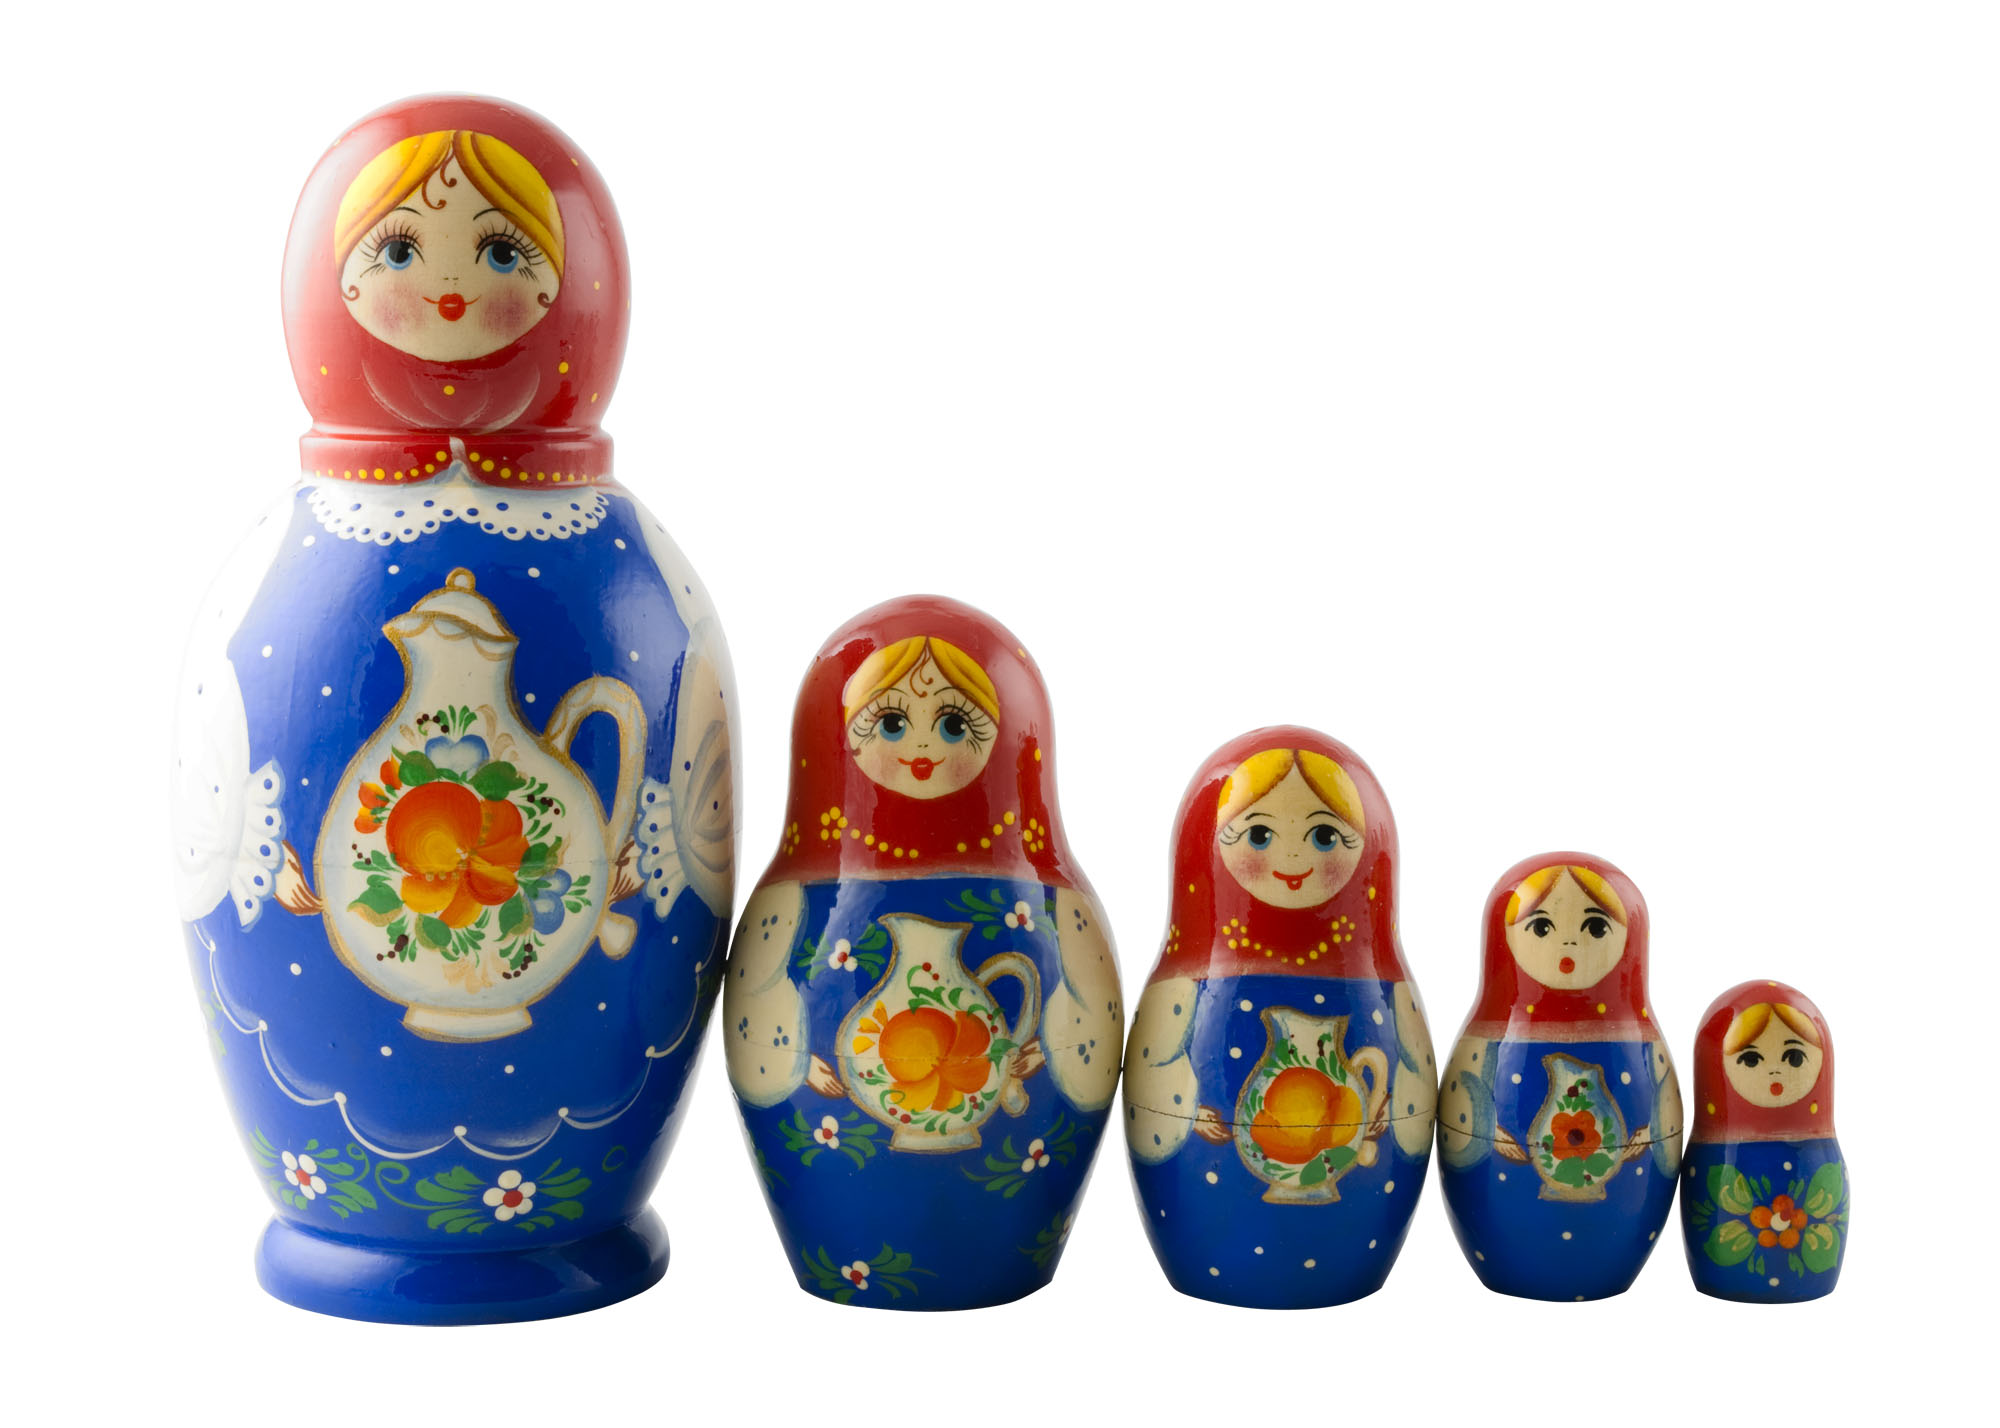 Buy Red & Blue Kirov Doll w/ Head 5pc./7" at GoldenCockerel.com